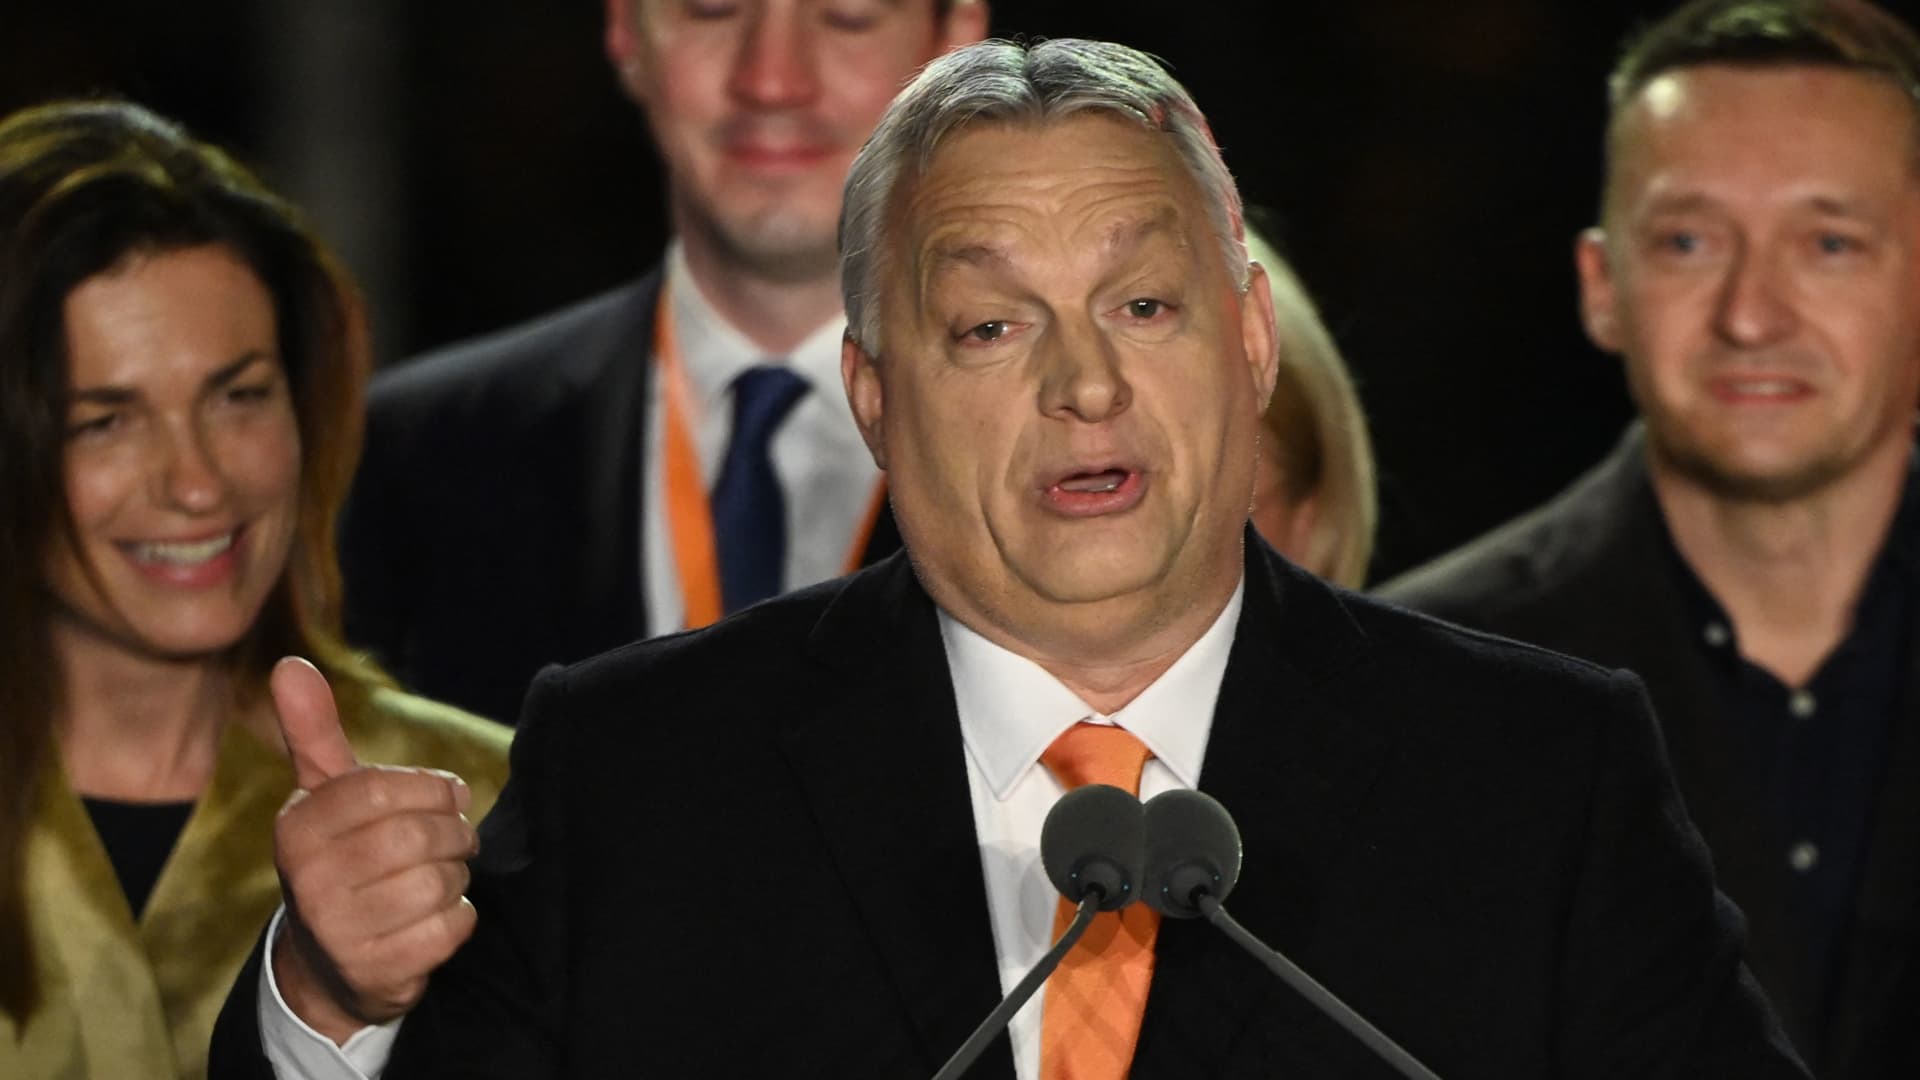 Hungary's Viktor Orban criticizes Ukraine's Zelenskyy in election speech